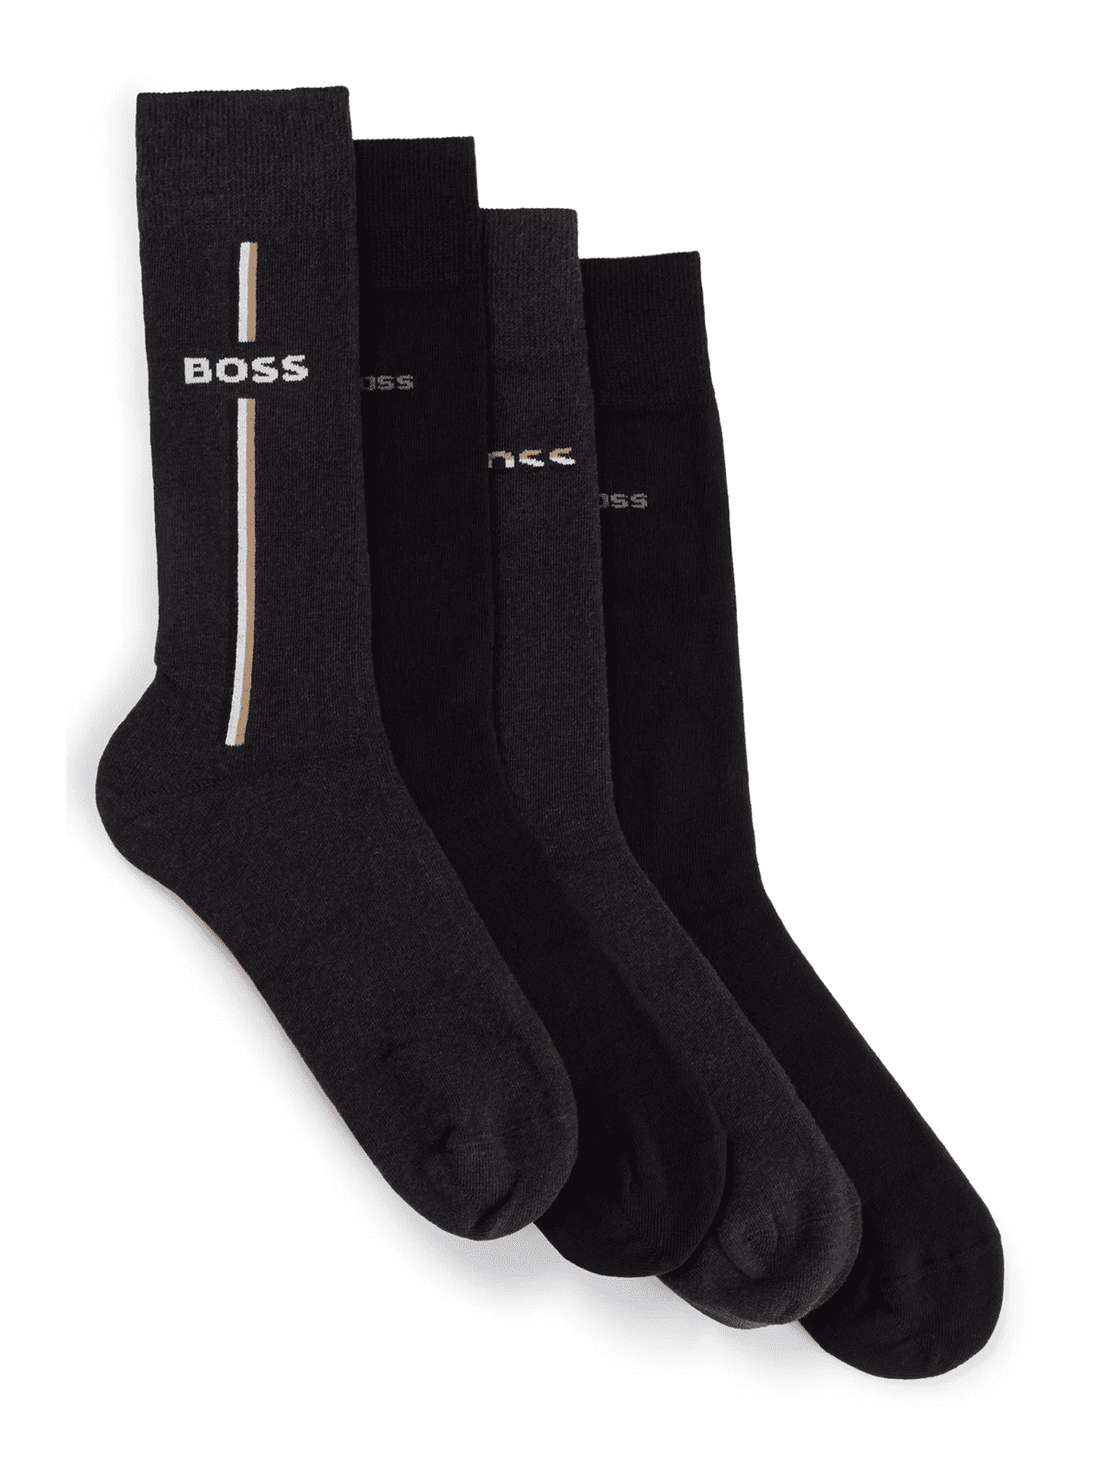 4-Pack Iconic Socks Giftset